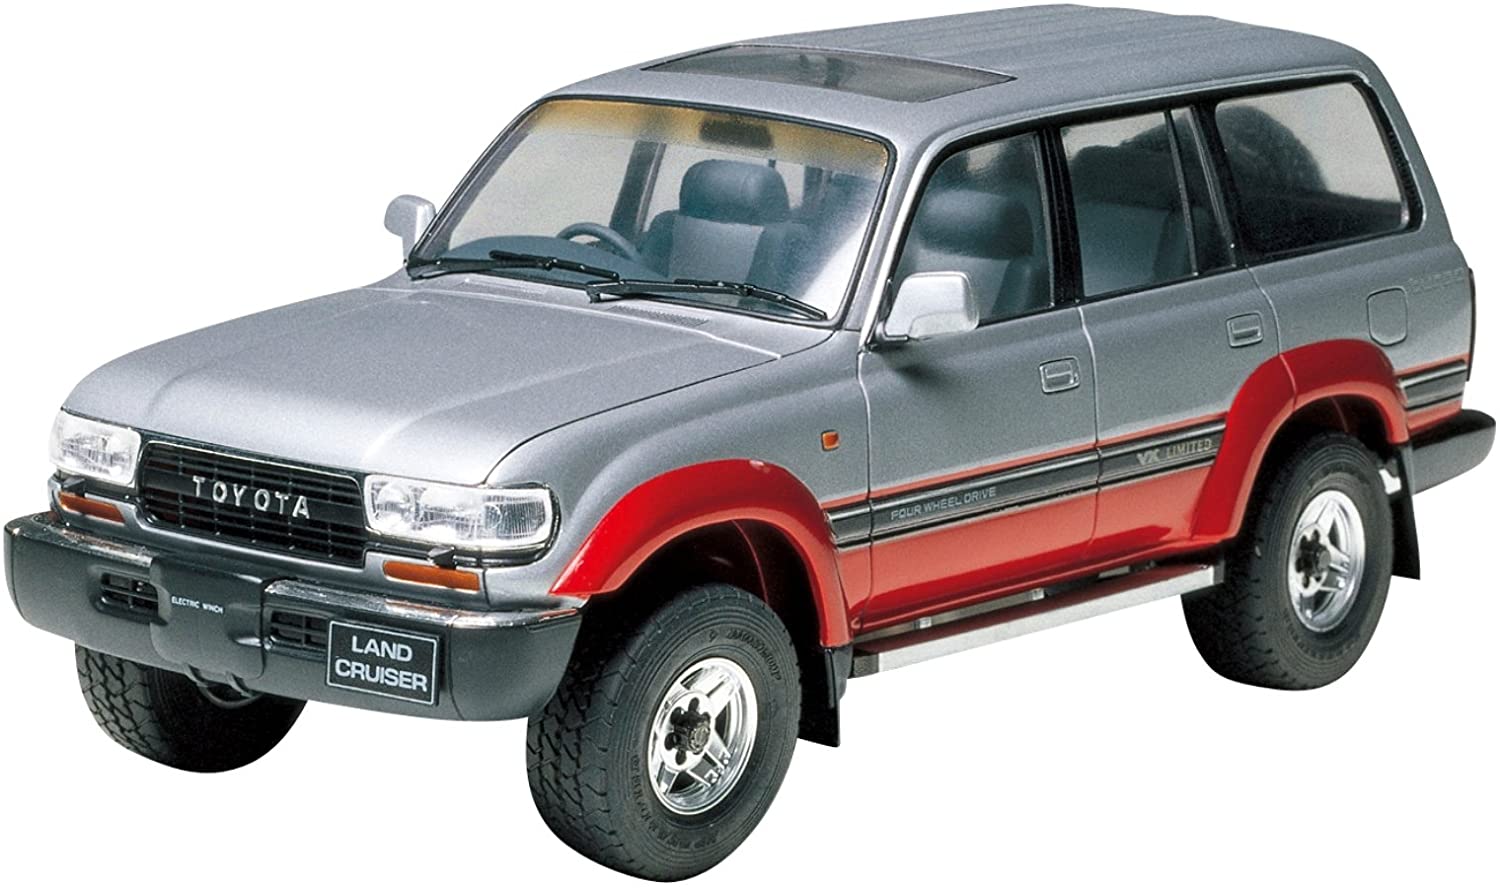 「1990年代の国産SUV」であなたが一番好きなのはどれ？【人気投票実施中】 | ねとらぼ調査隊